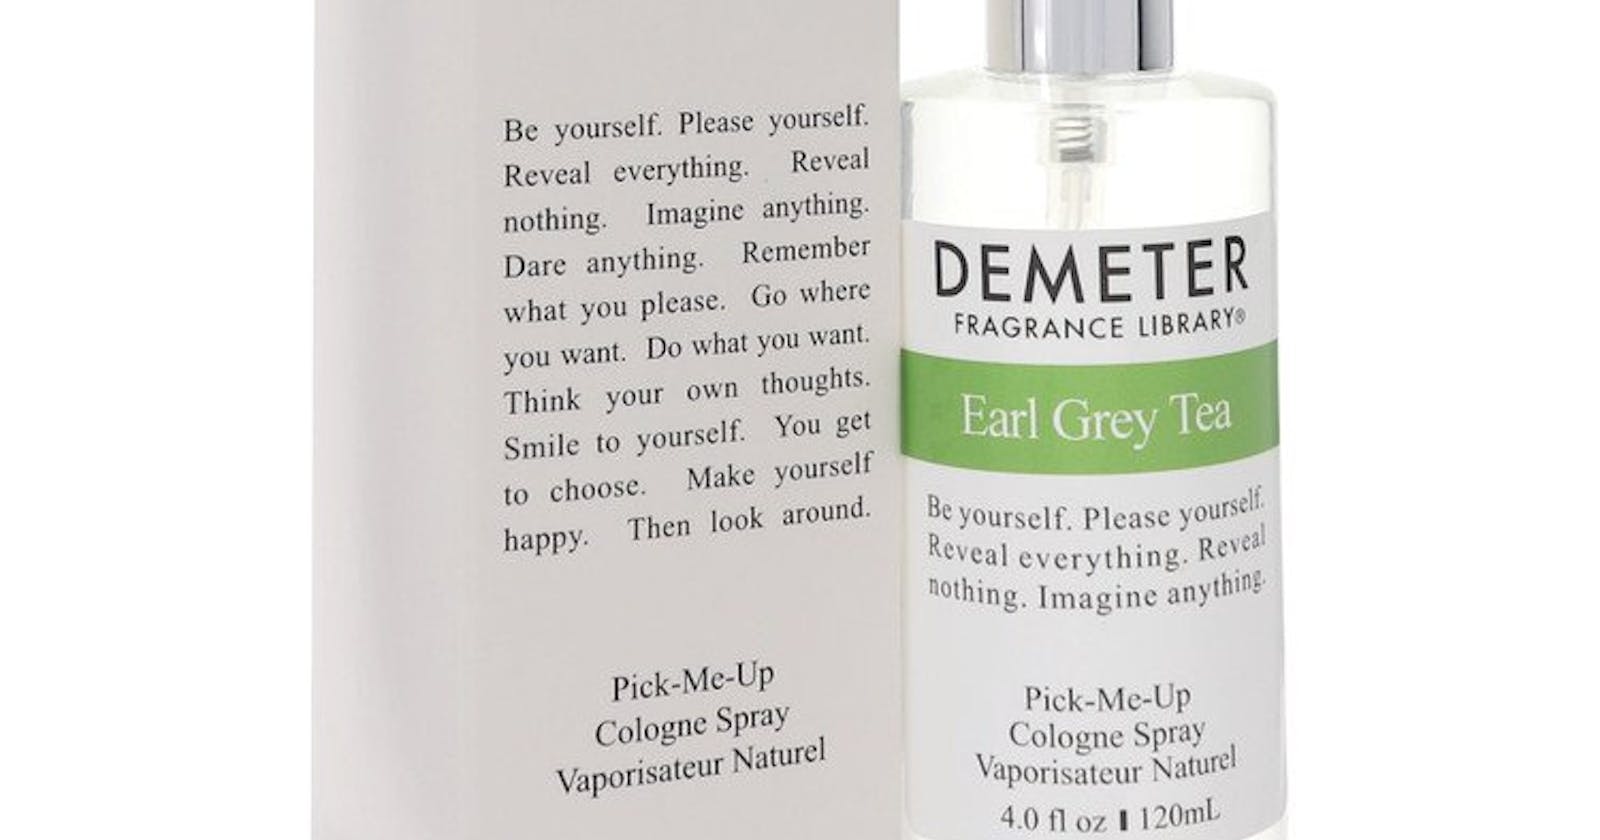 Earl Grey Tea Perfume By Demeter For Women